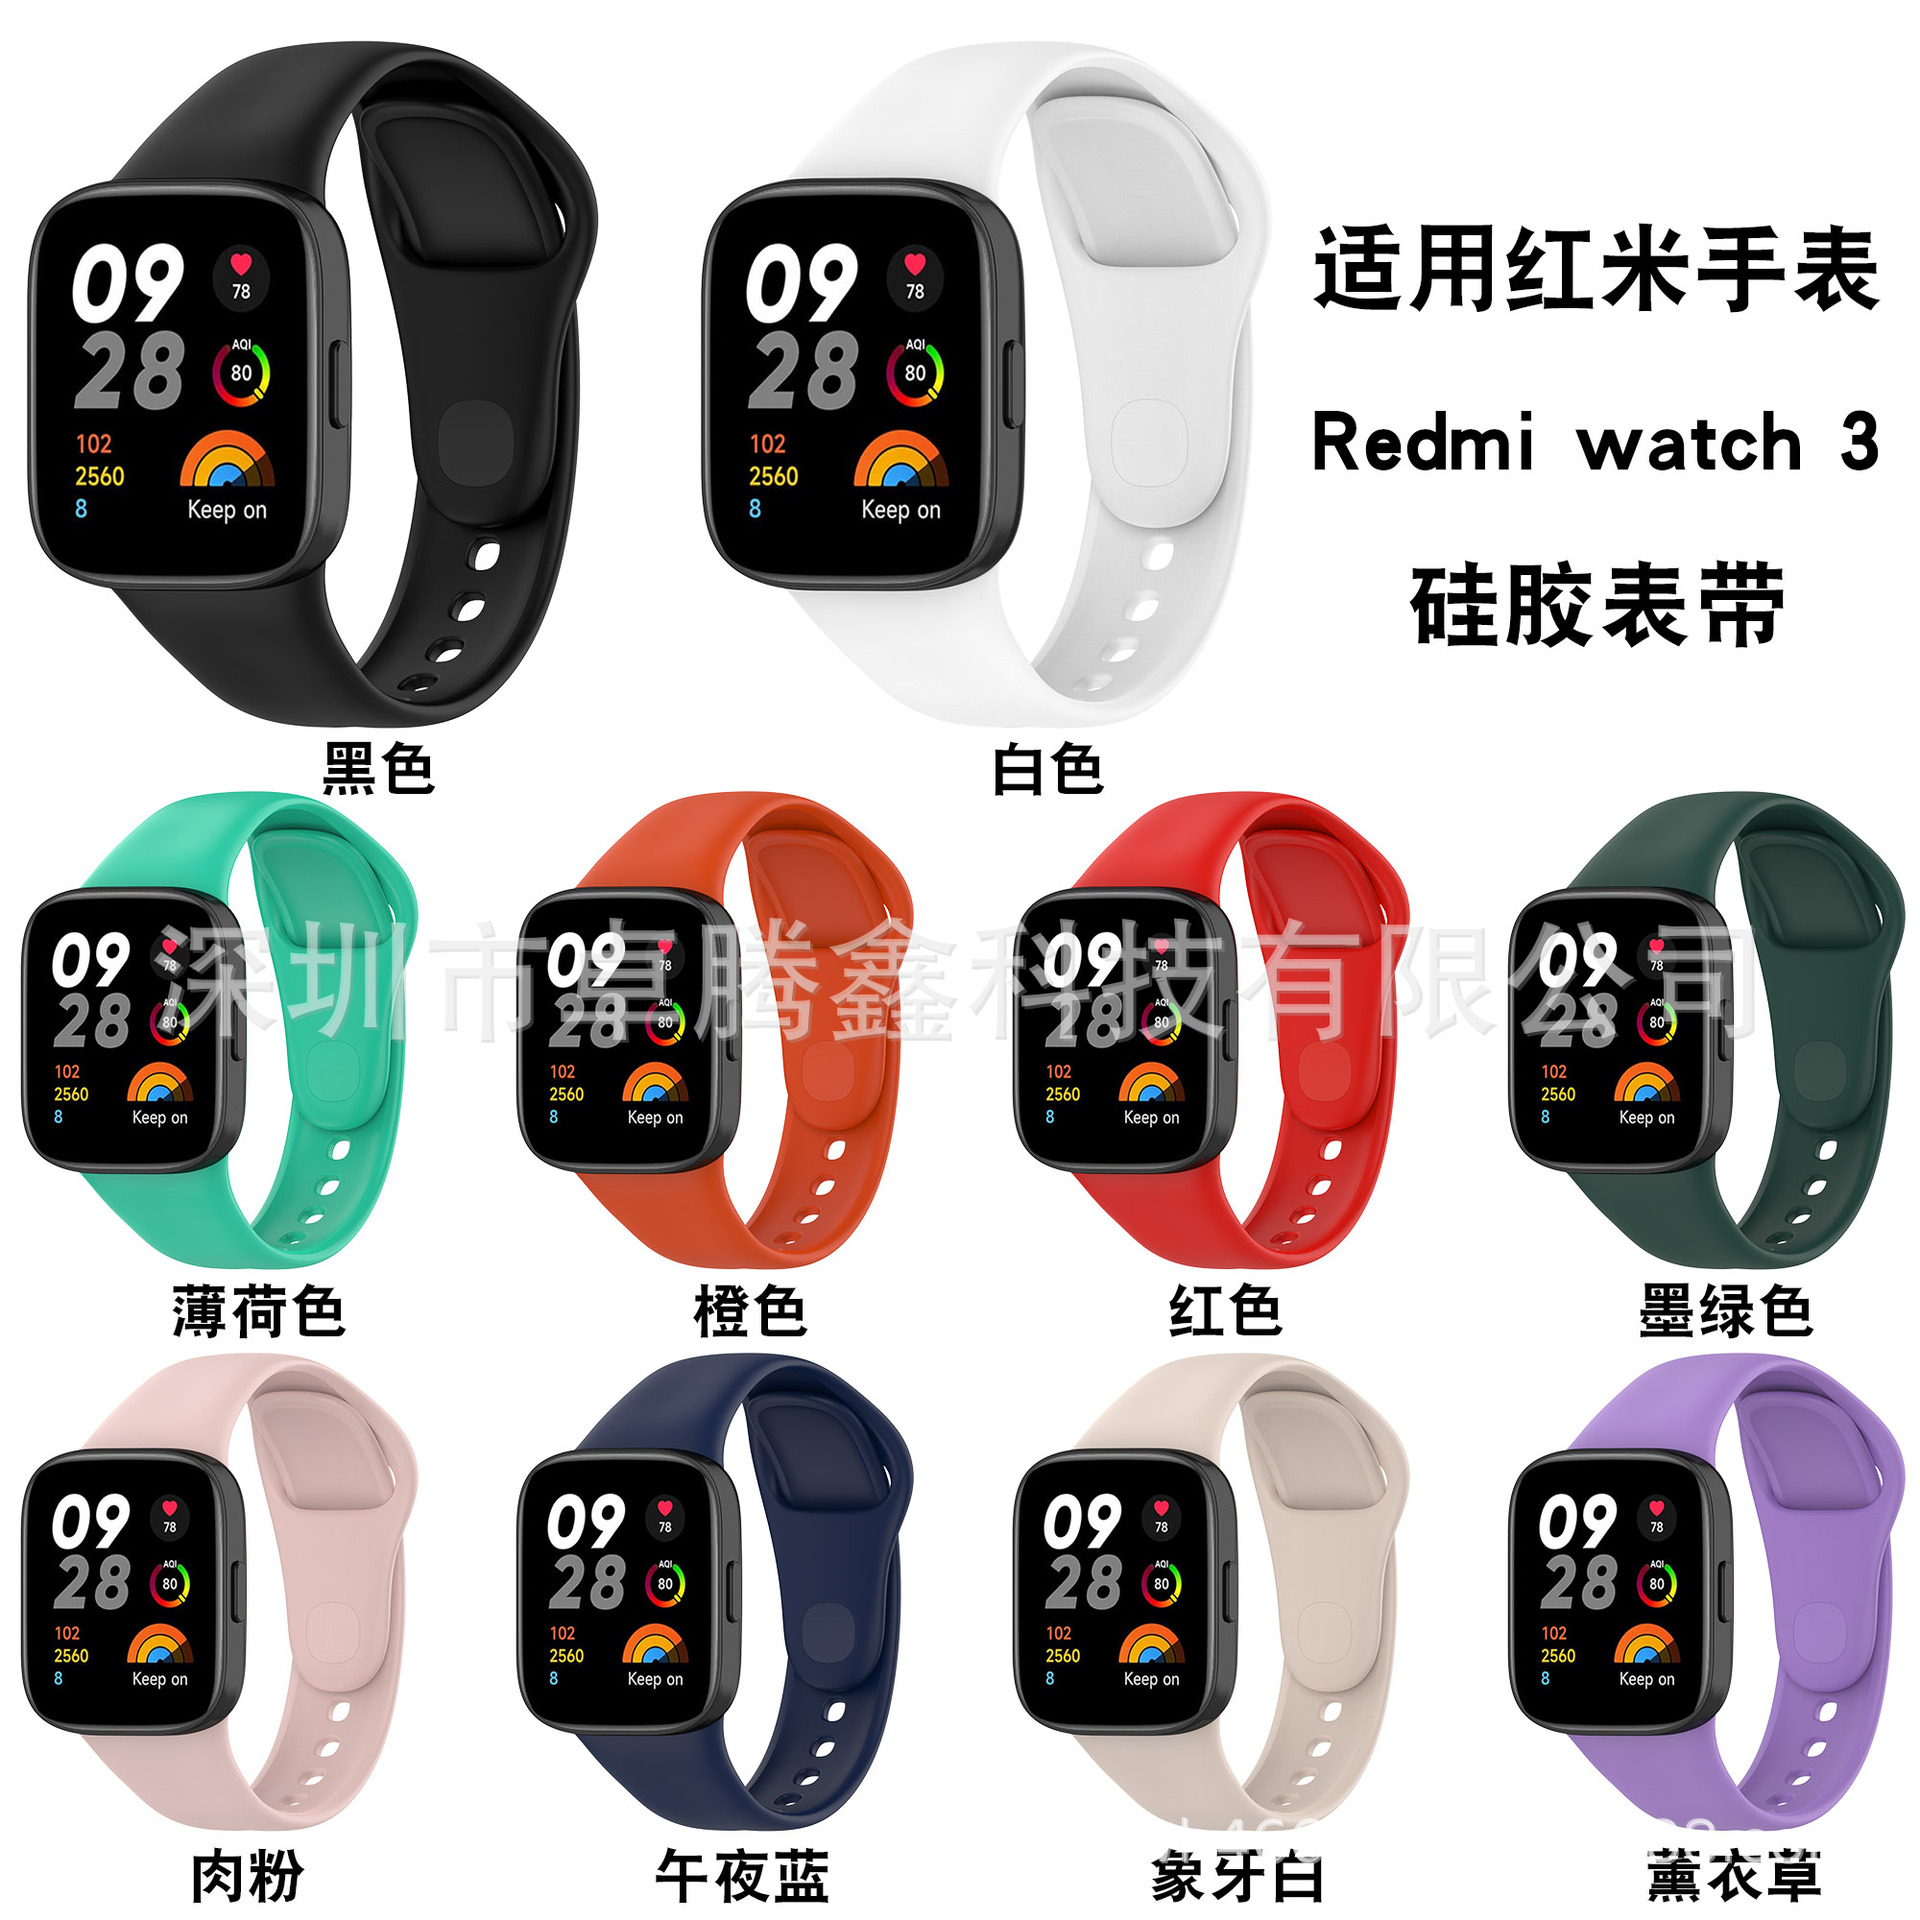 新款适用红米watch3手表带 智能运动手表红米Redmi watch 3手表带